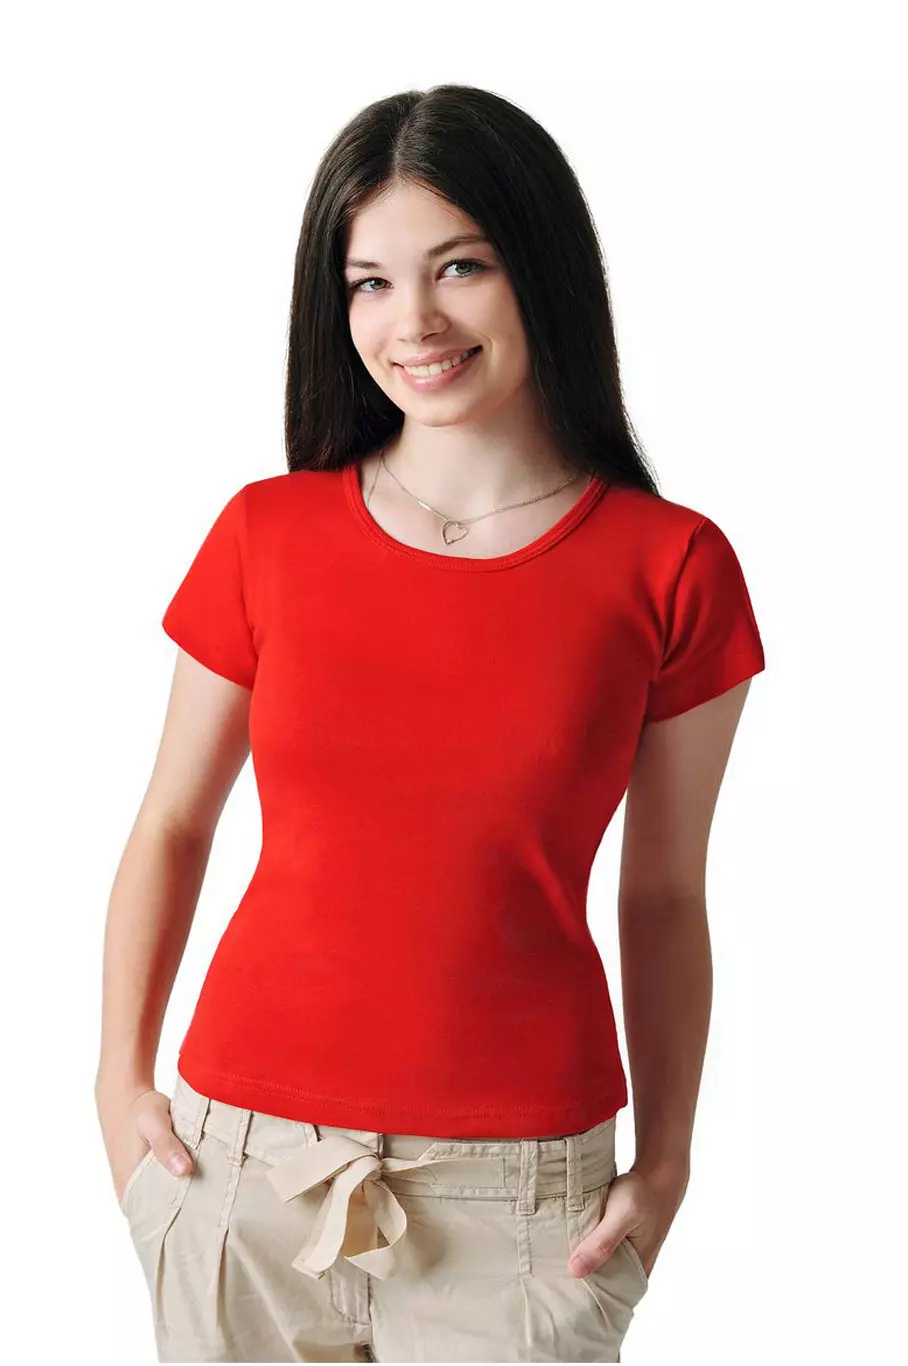 Red Tシャツ（78枚の写真）：女性のTシャツ、ポロを着用して組み合わせたもの 14584_78